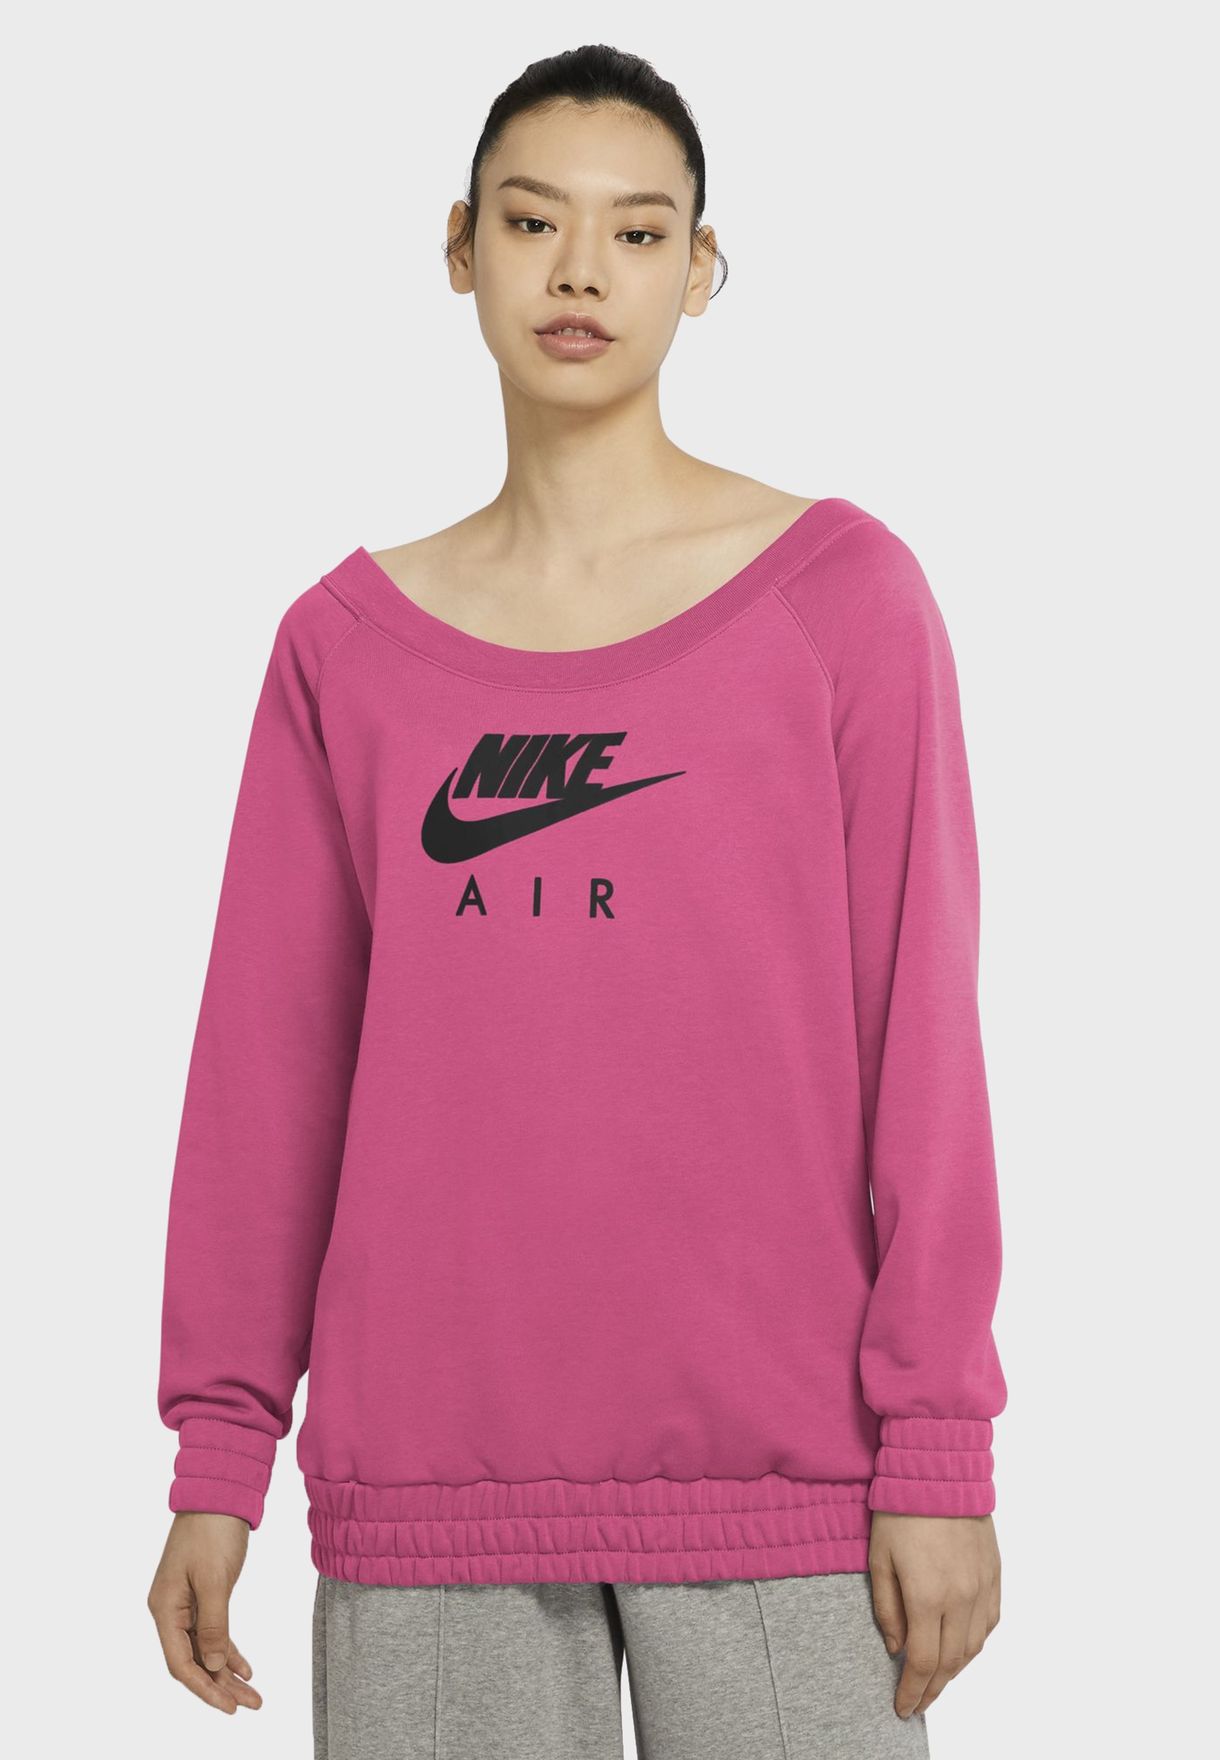 nike air pink sweatshirt